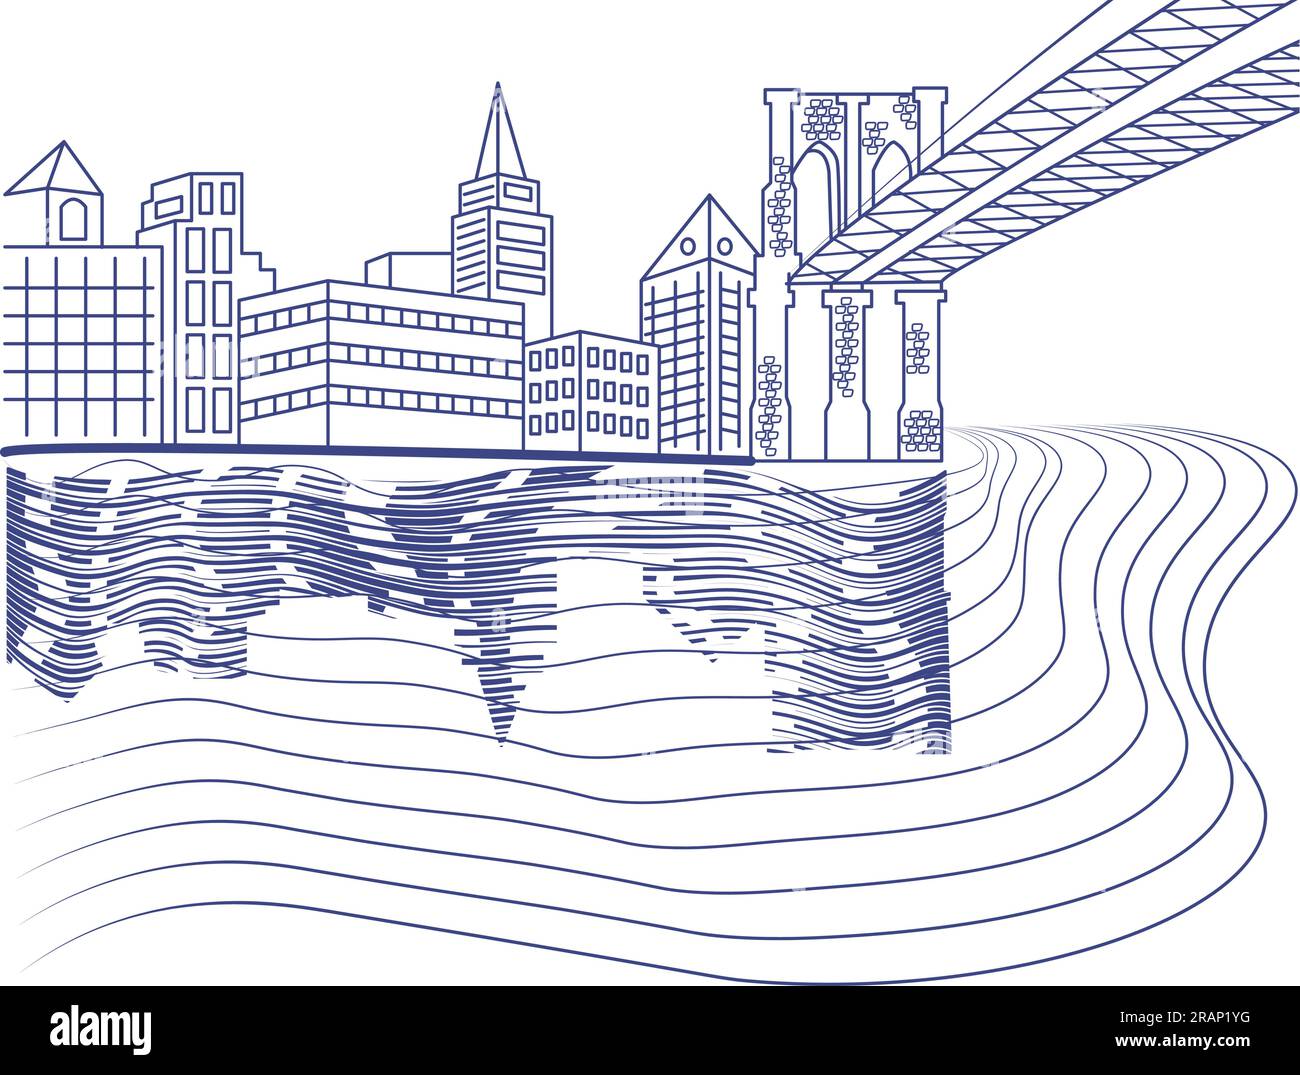 Umreißen Sie die städtische Landschaft in der Nähe des Flusses mit Silhouetten von Gebäuden und Brücken, die auf transparentem Hintergrund zeichnen Stock Vektor